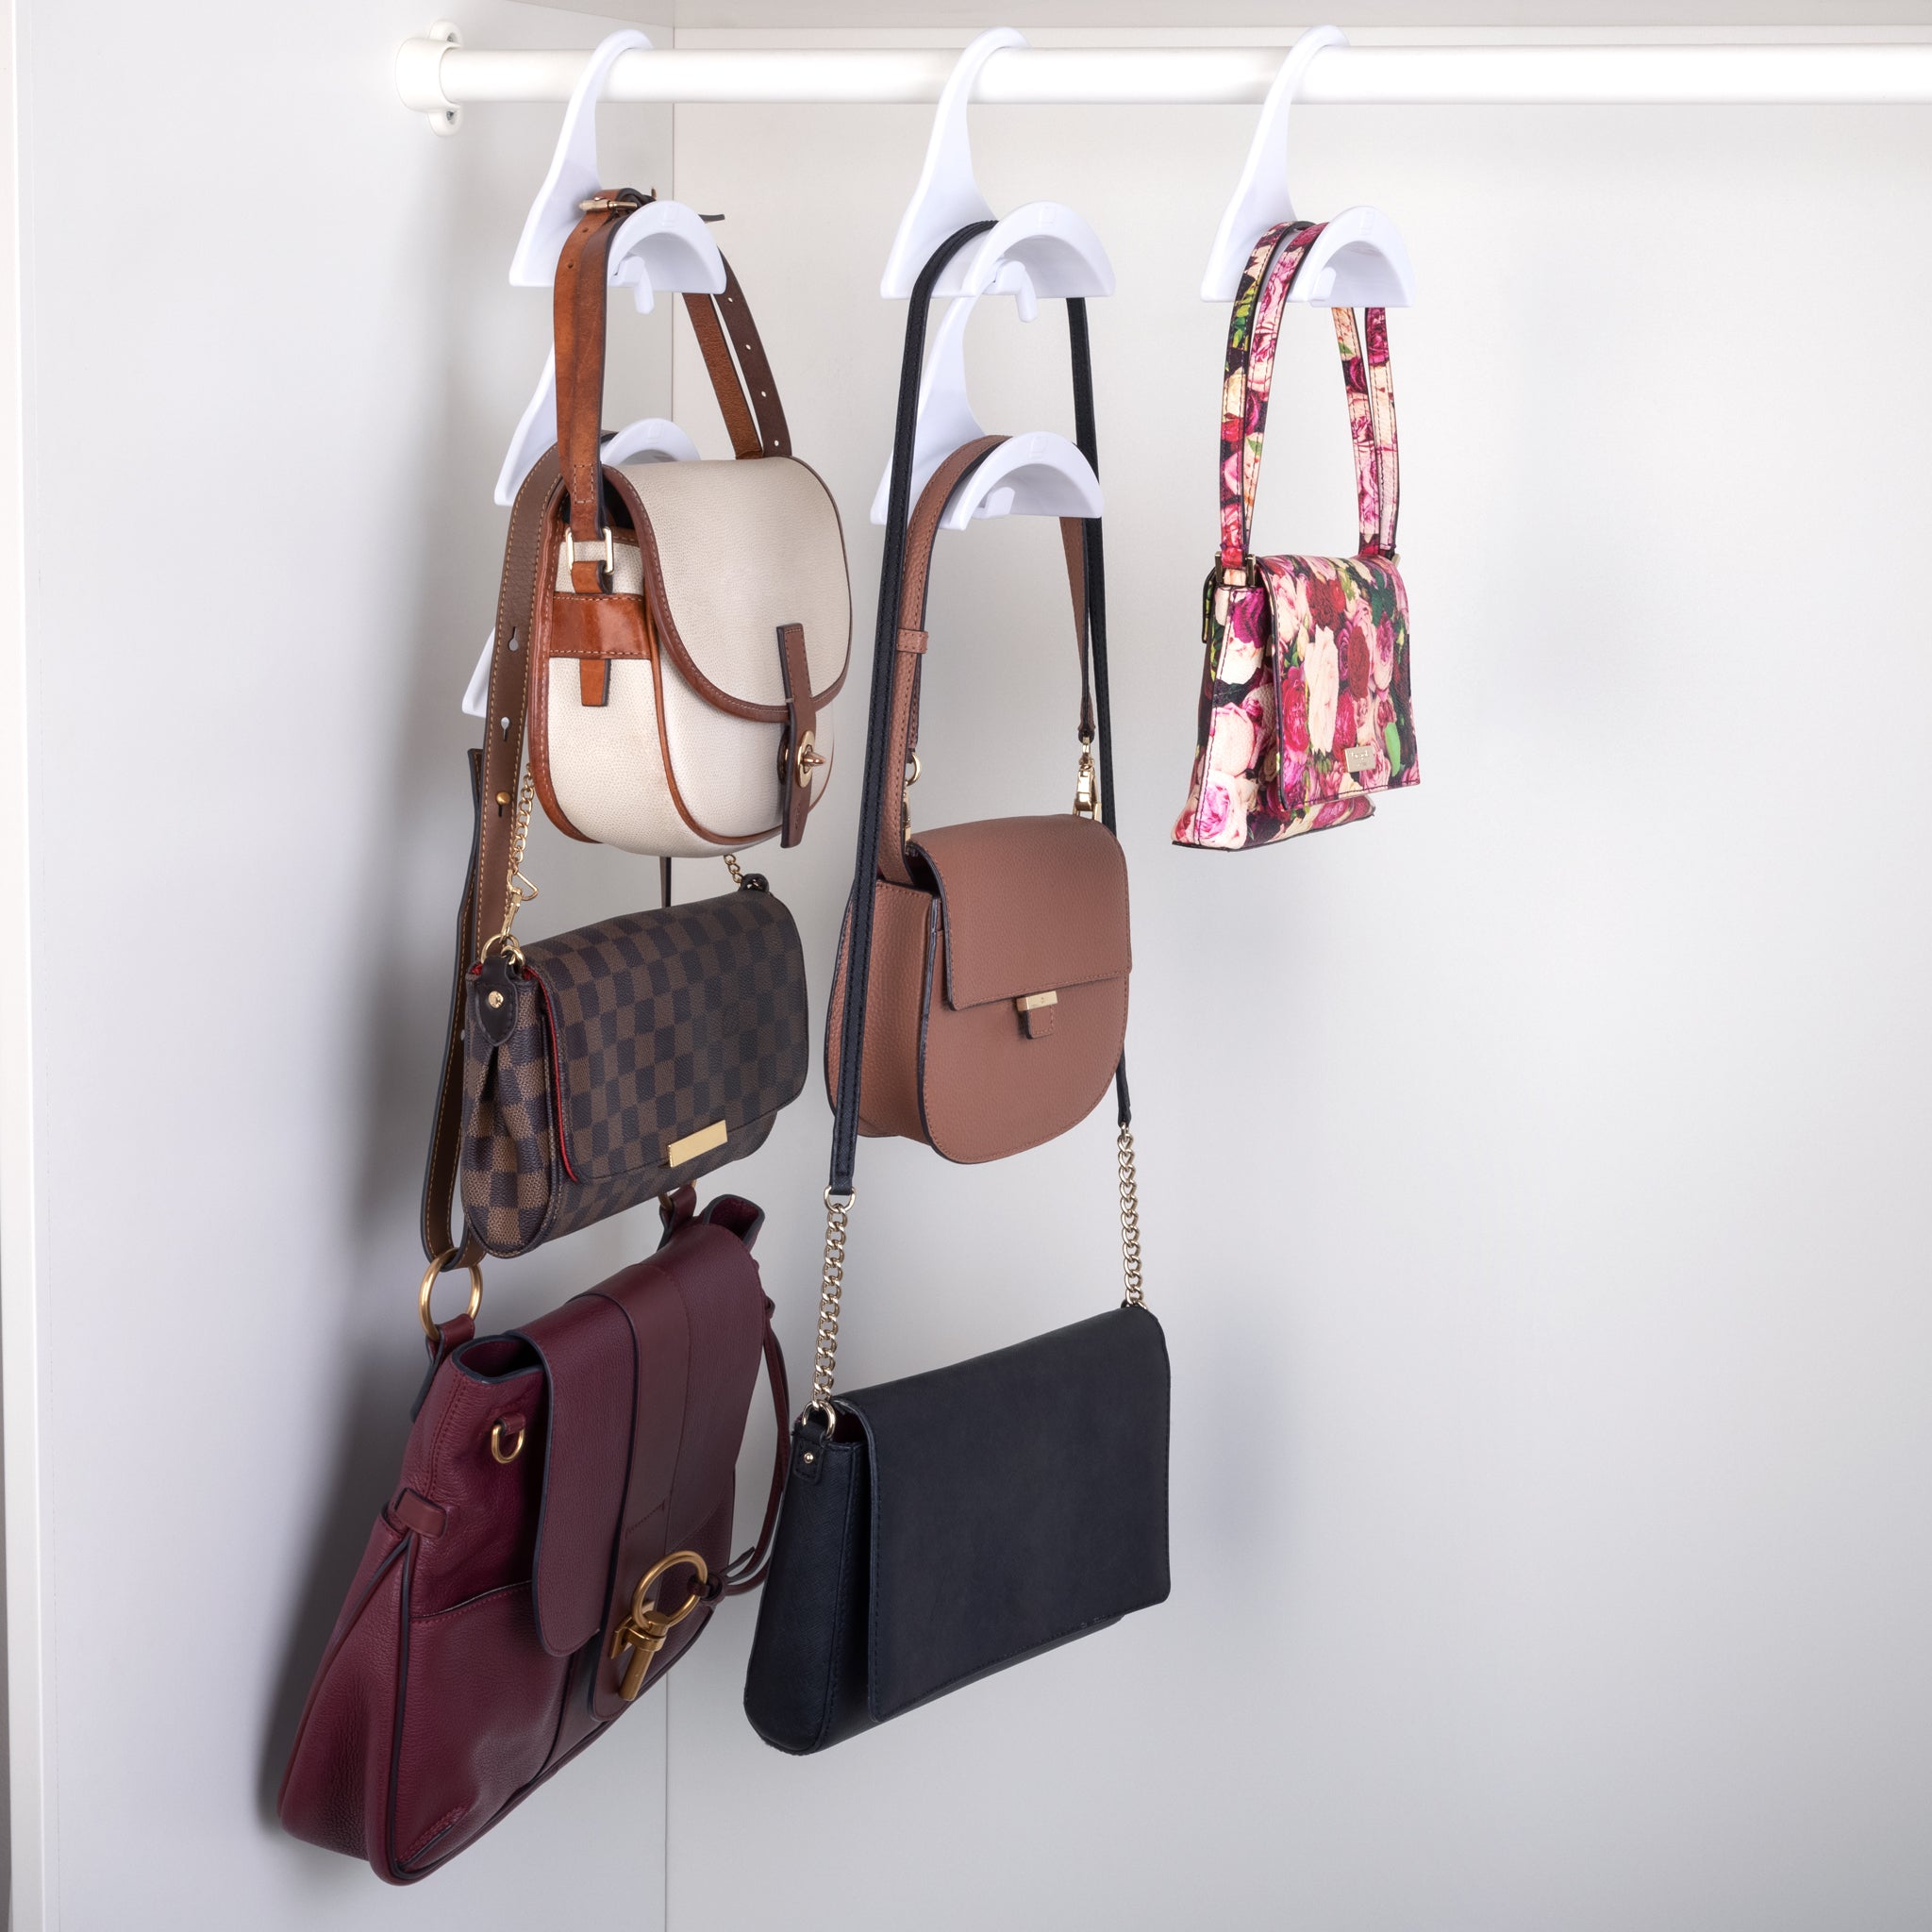 6-Pack Handbag hangers - Smart Design® 6